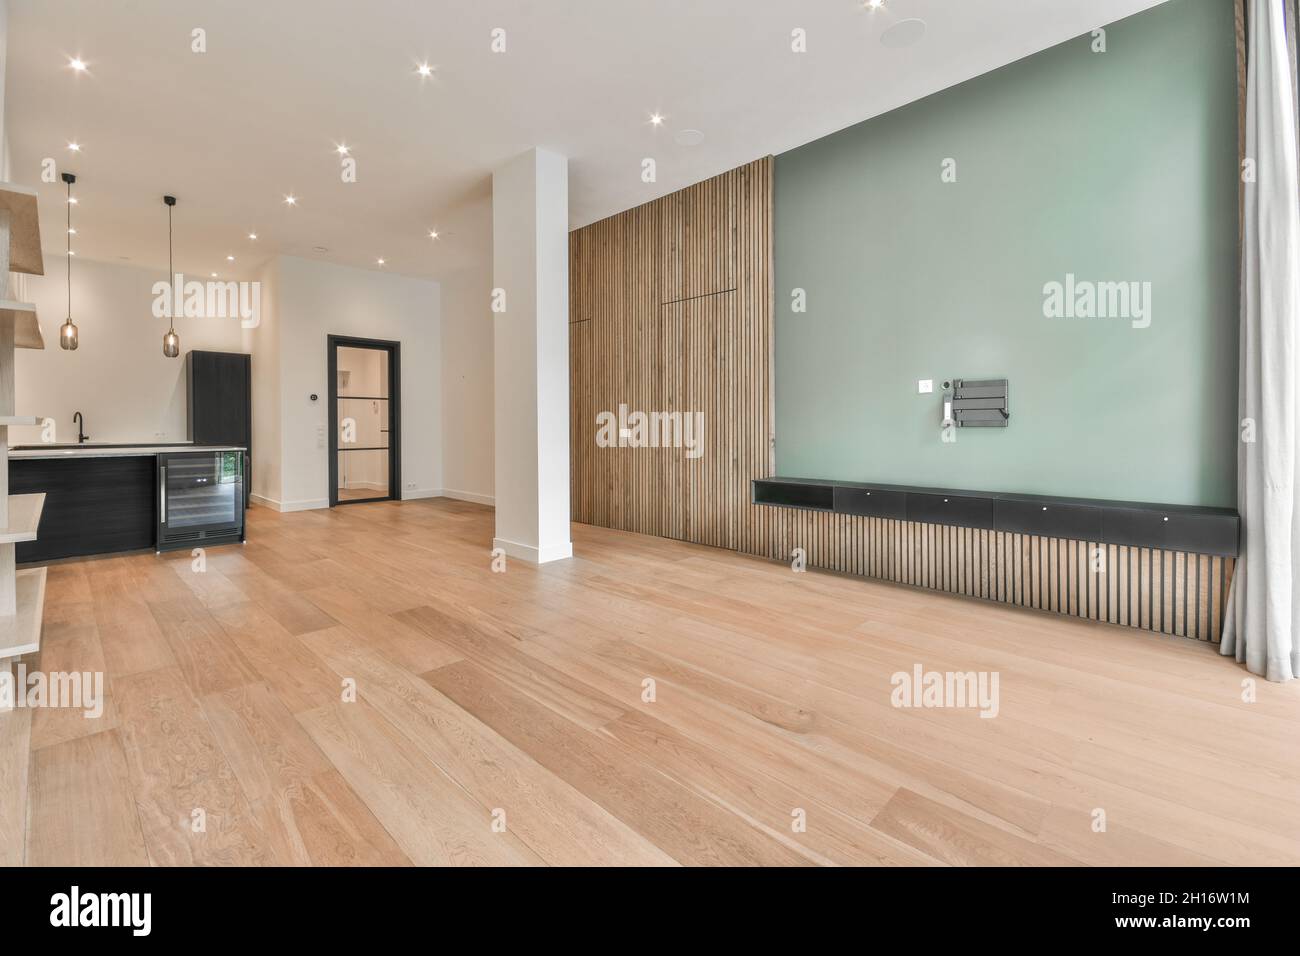 Intérieur d'une cuisine spacieuse avec mobilier noir minimaliste dans un appartement moderne avec murs blancs, parquet et colonnes Banque D'Images